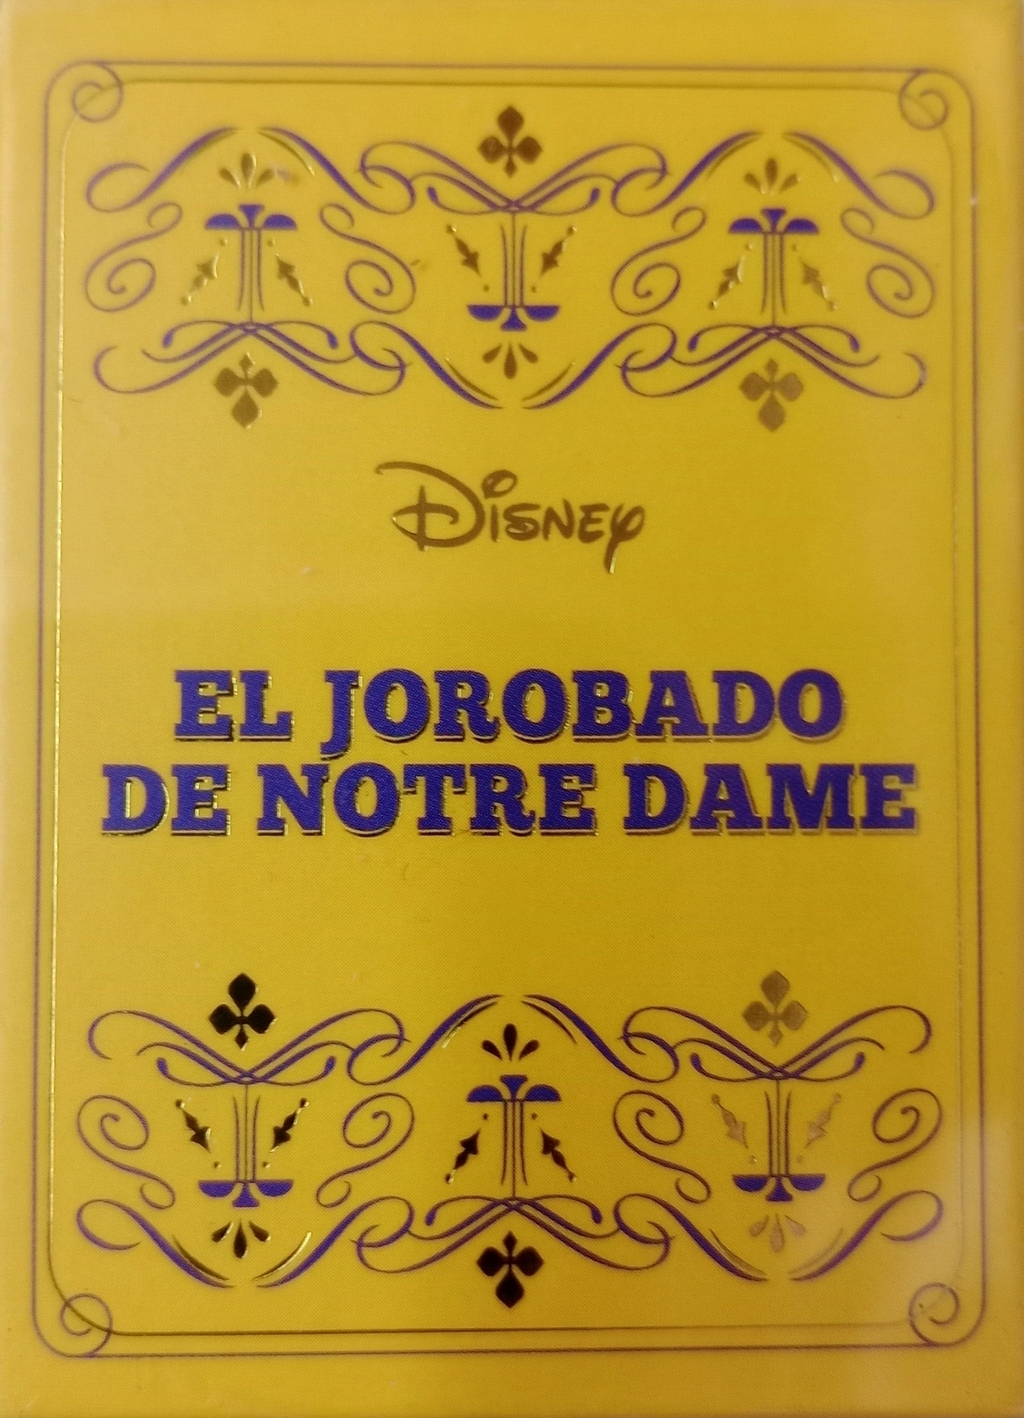 Cuentos En Miniatura Disney Salvat # 47 El Jorobado De Notre